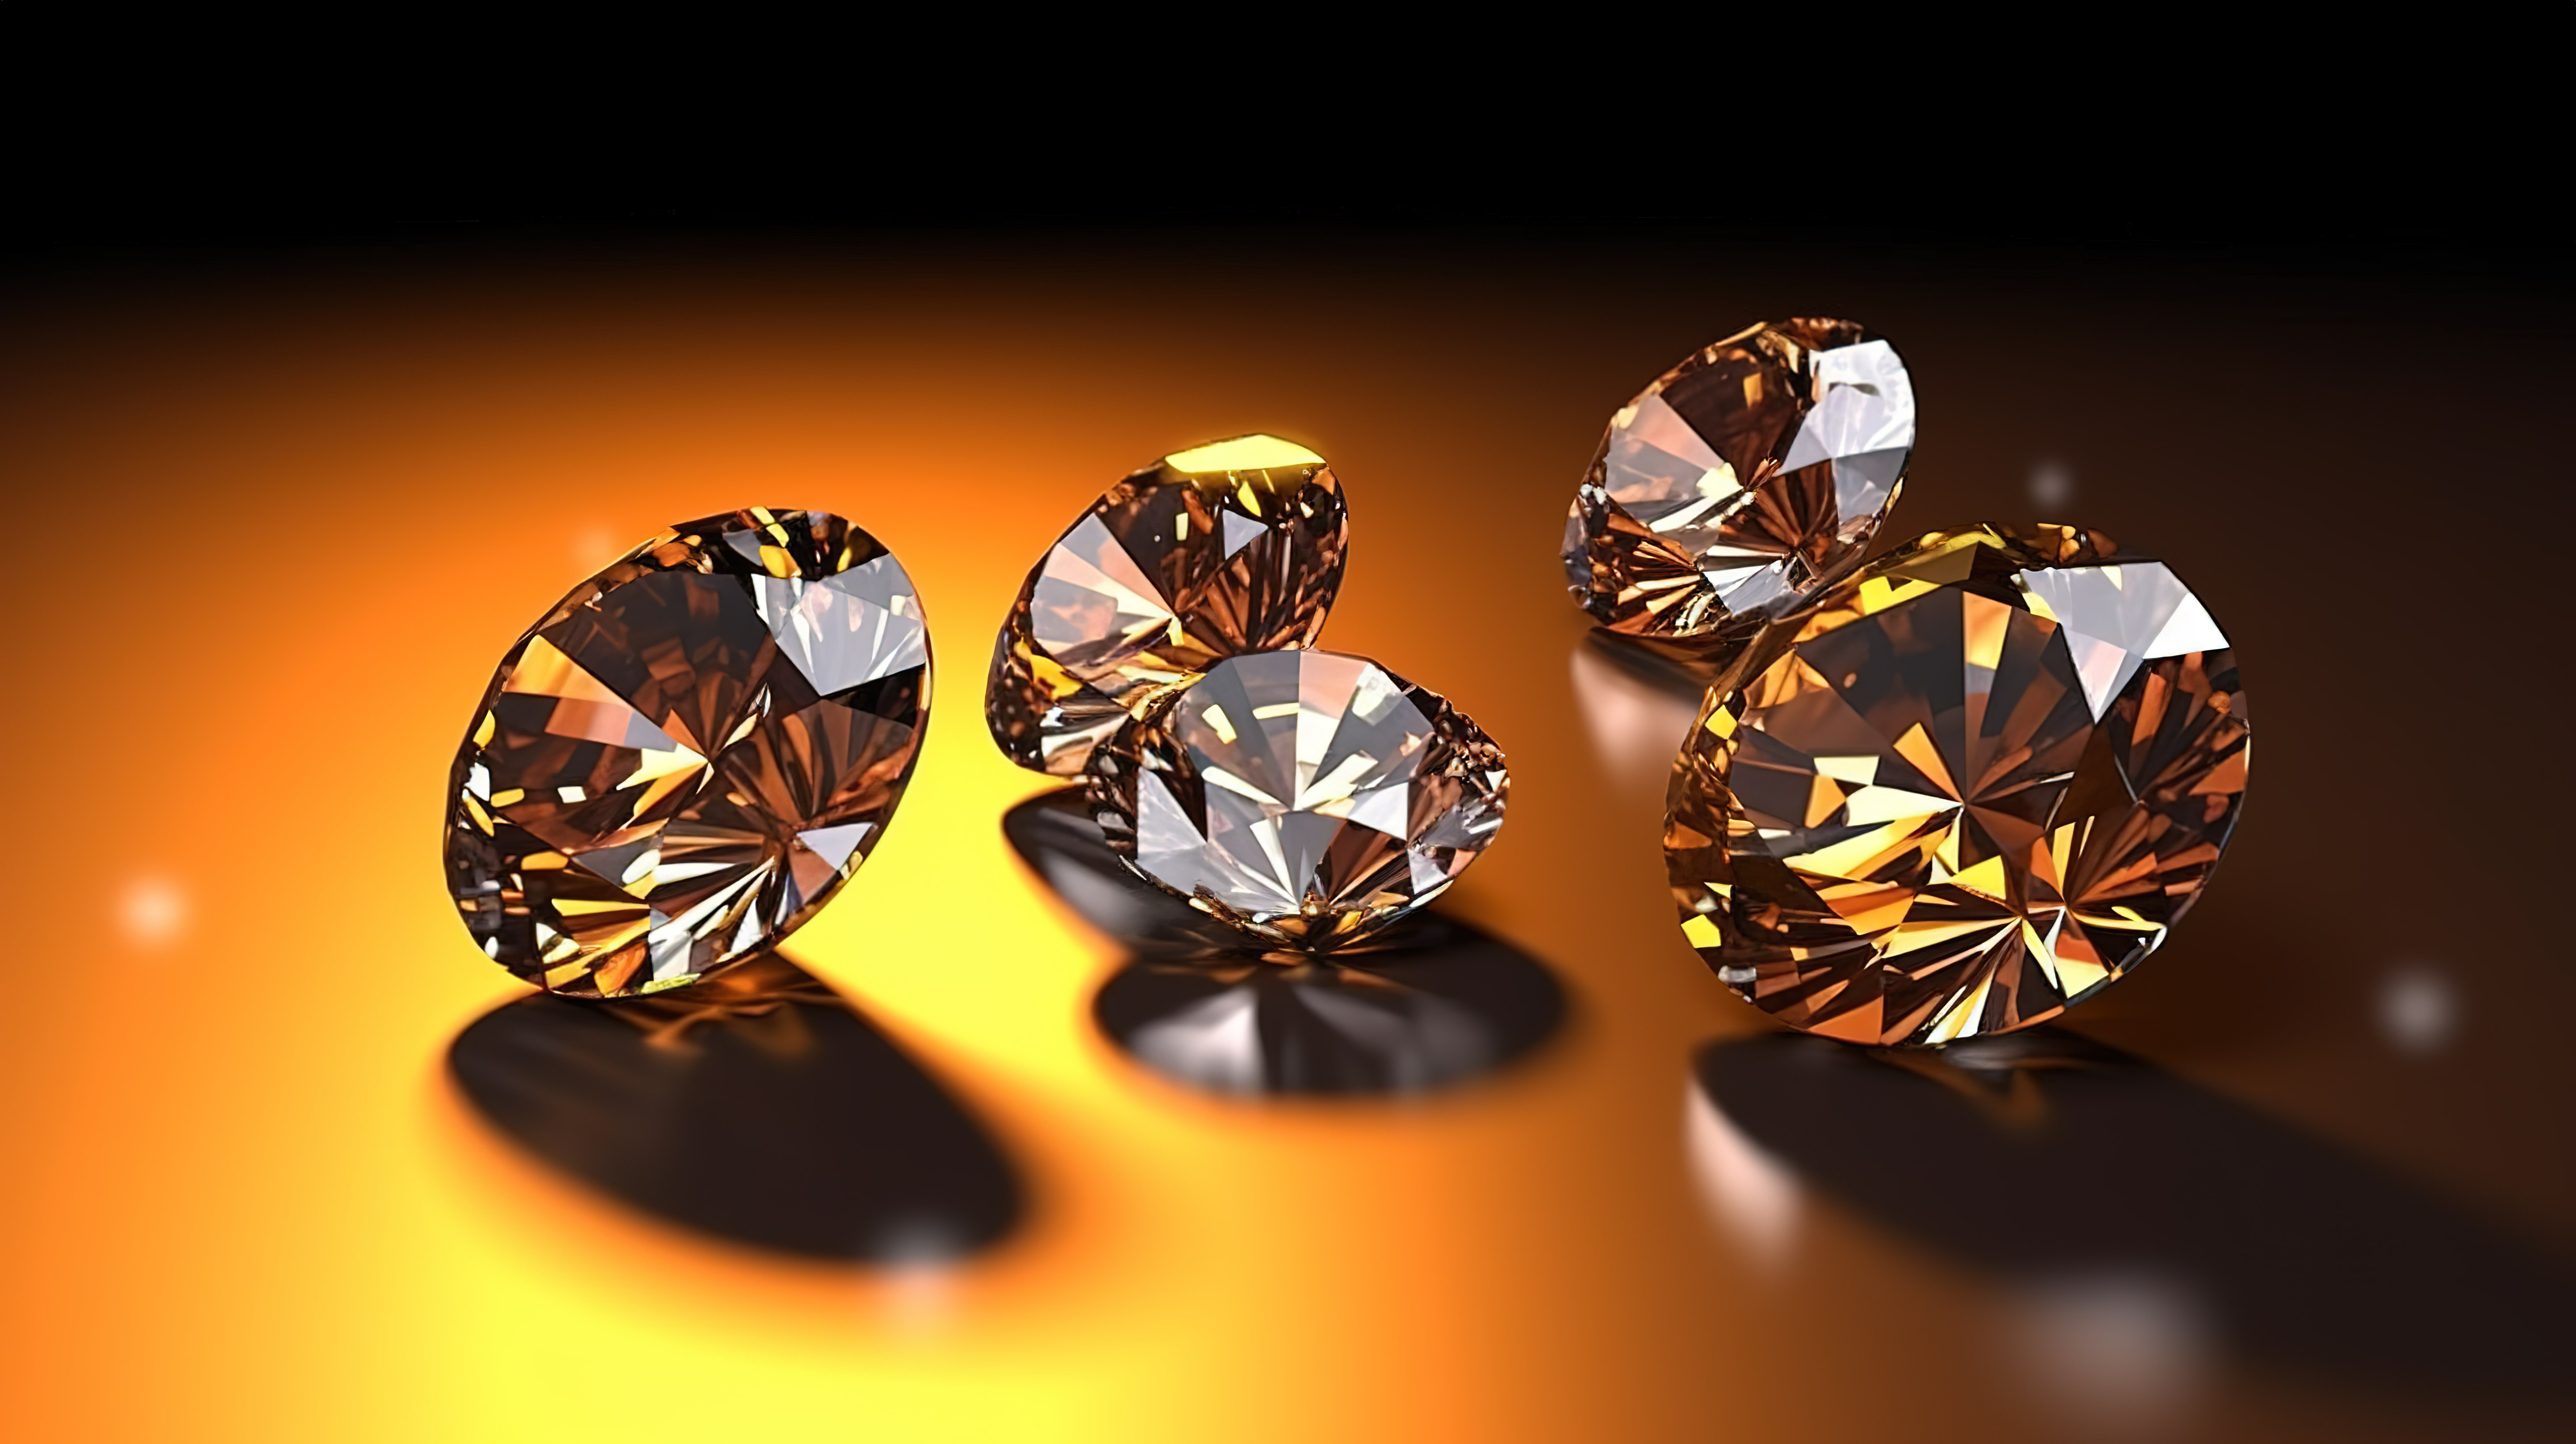 3D 渲染中反射表面上钻石簇的形成图片